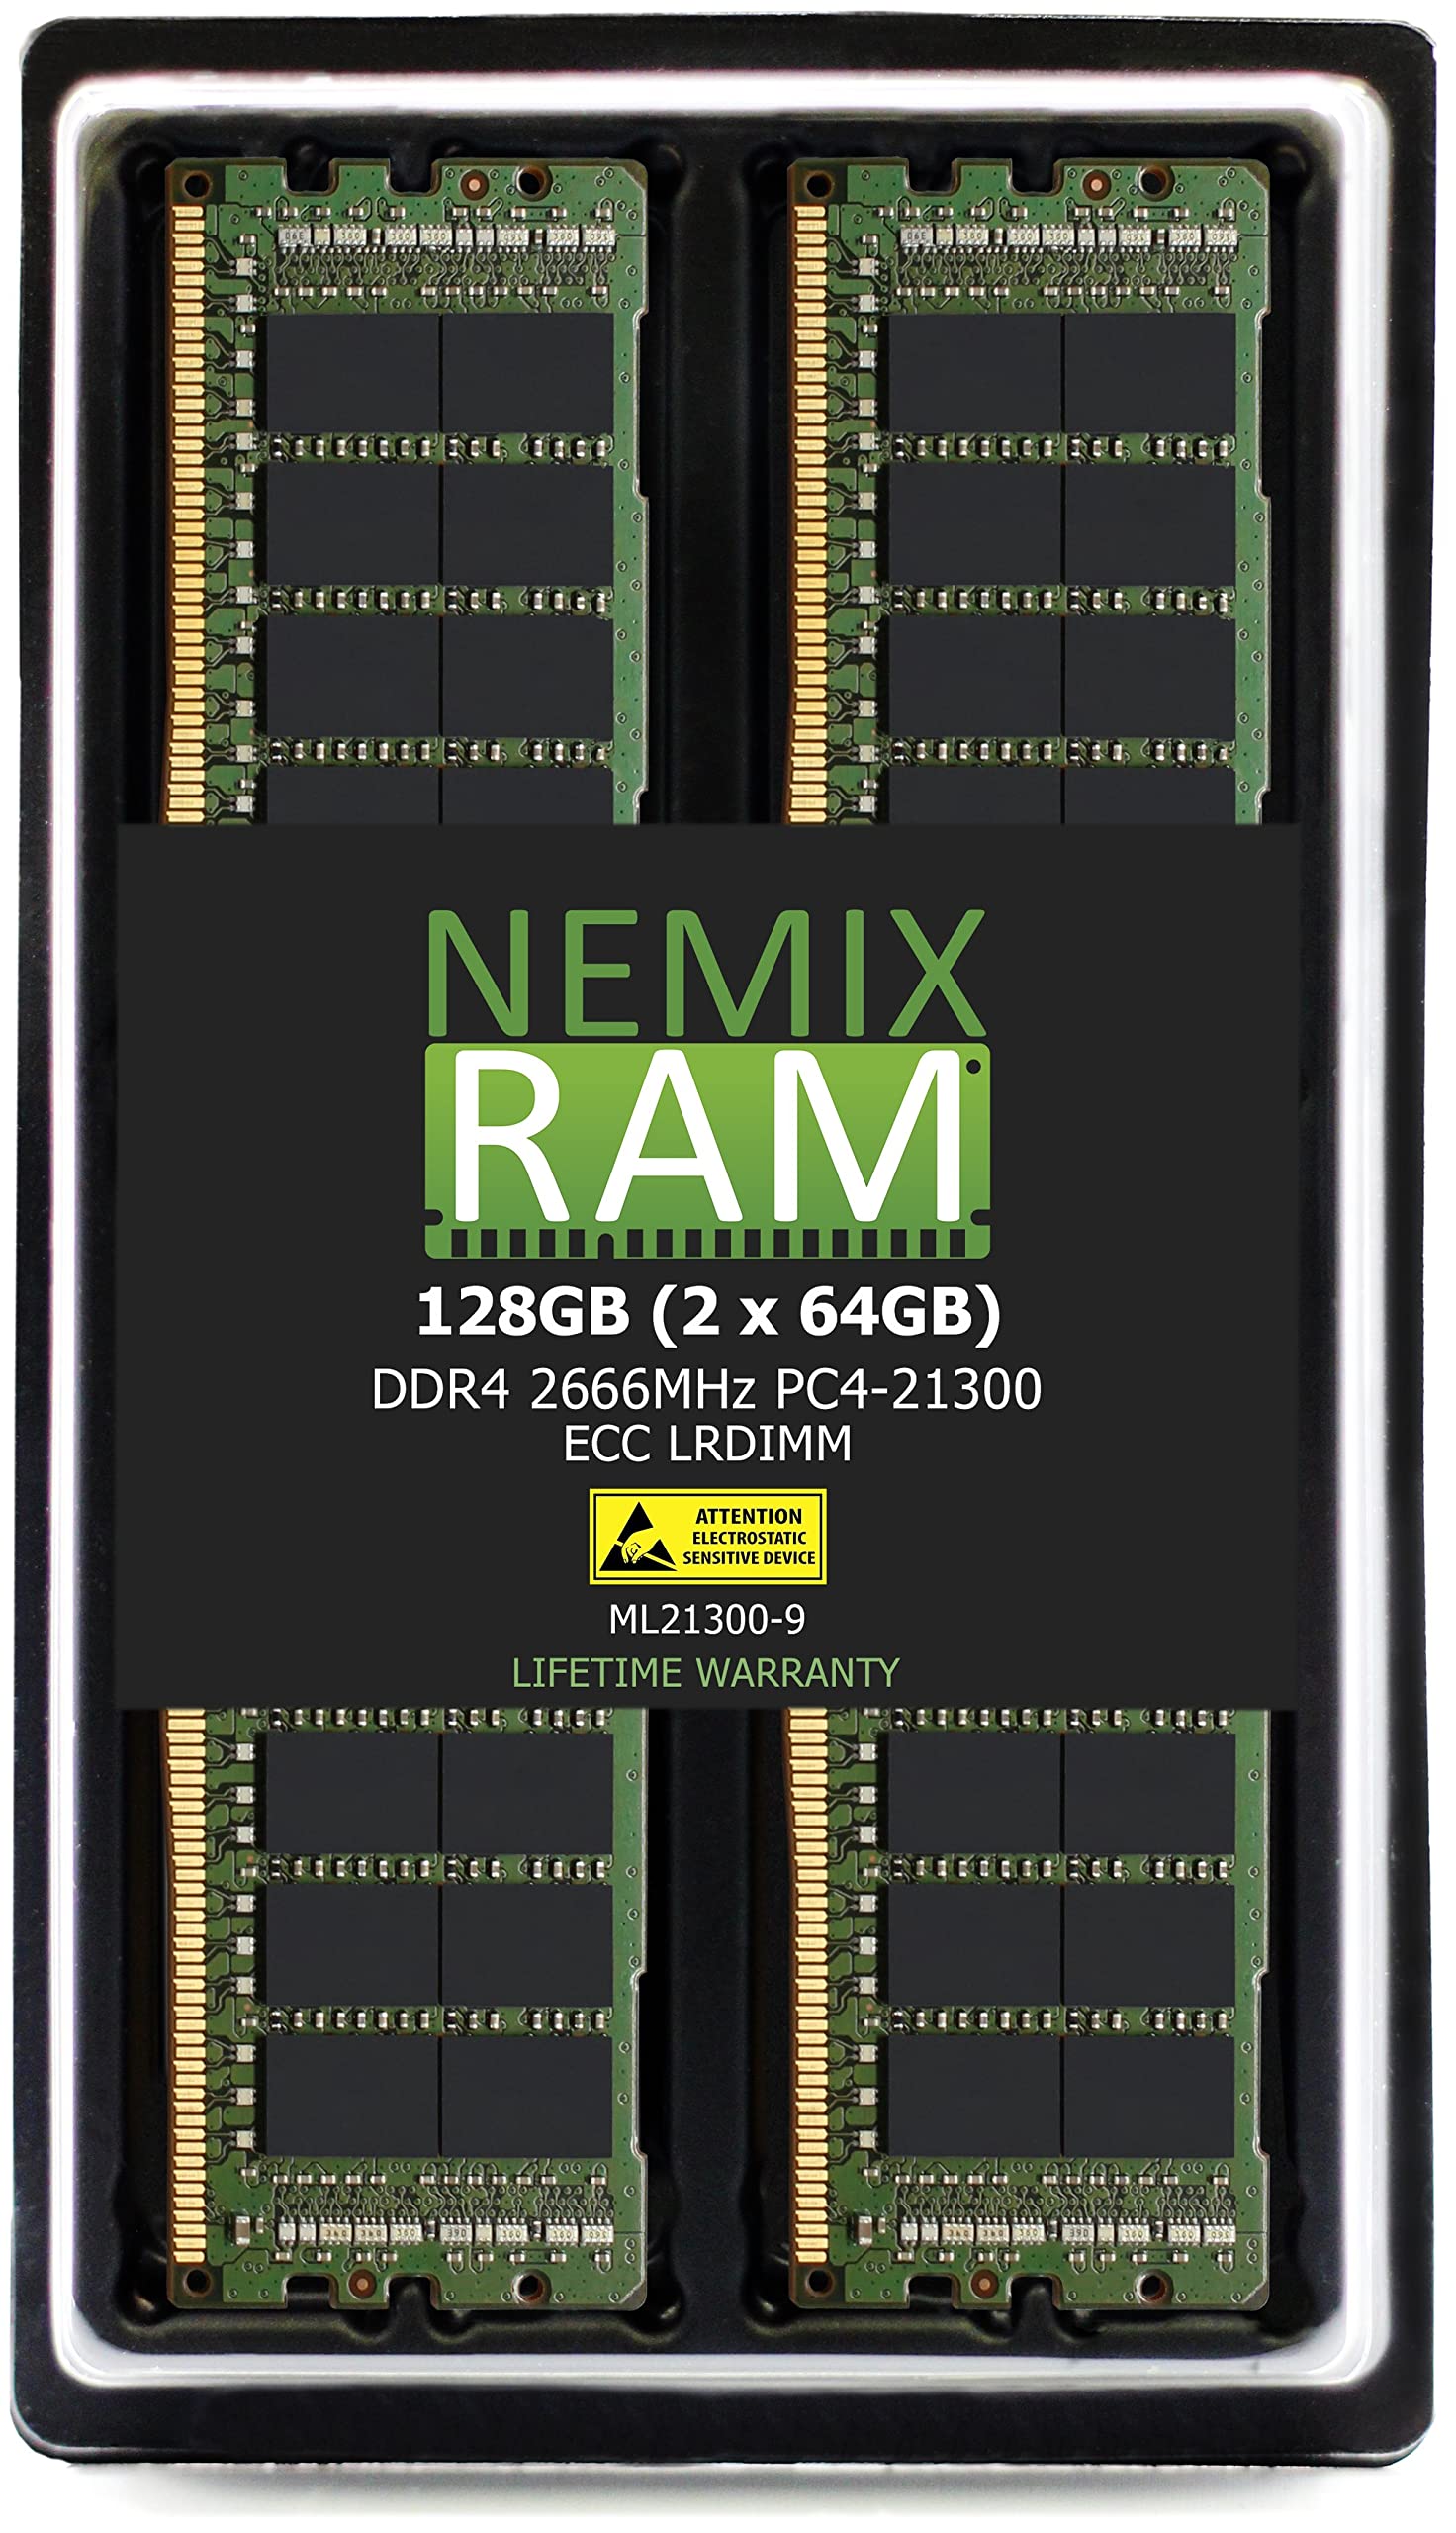 NEMIX RAM 128GB 2X64GB DDR4-2666 PC4-21300 ECC LRDIMM 負荷軽減サーバーメモリアップグレード EMC Dell Power